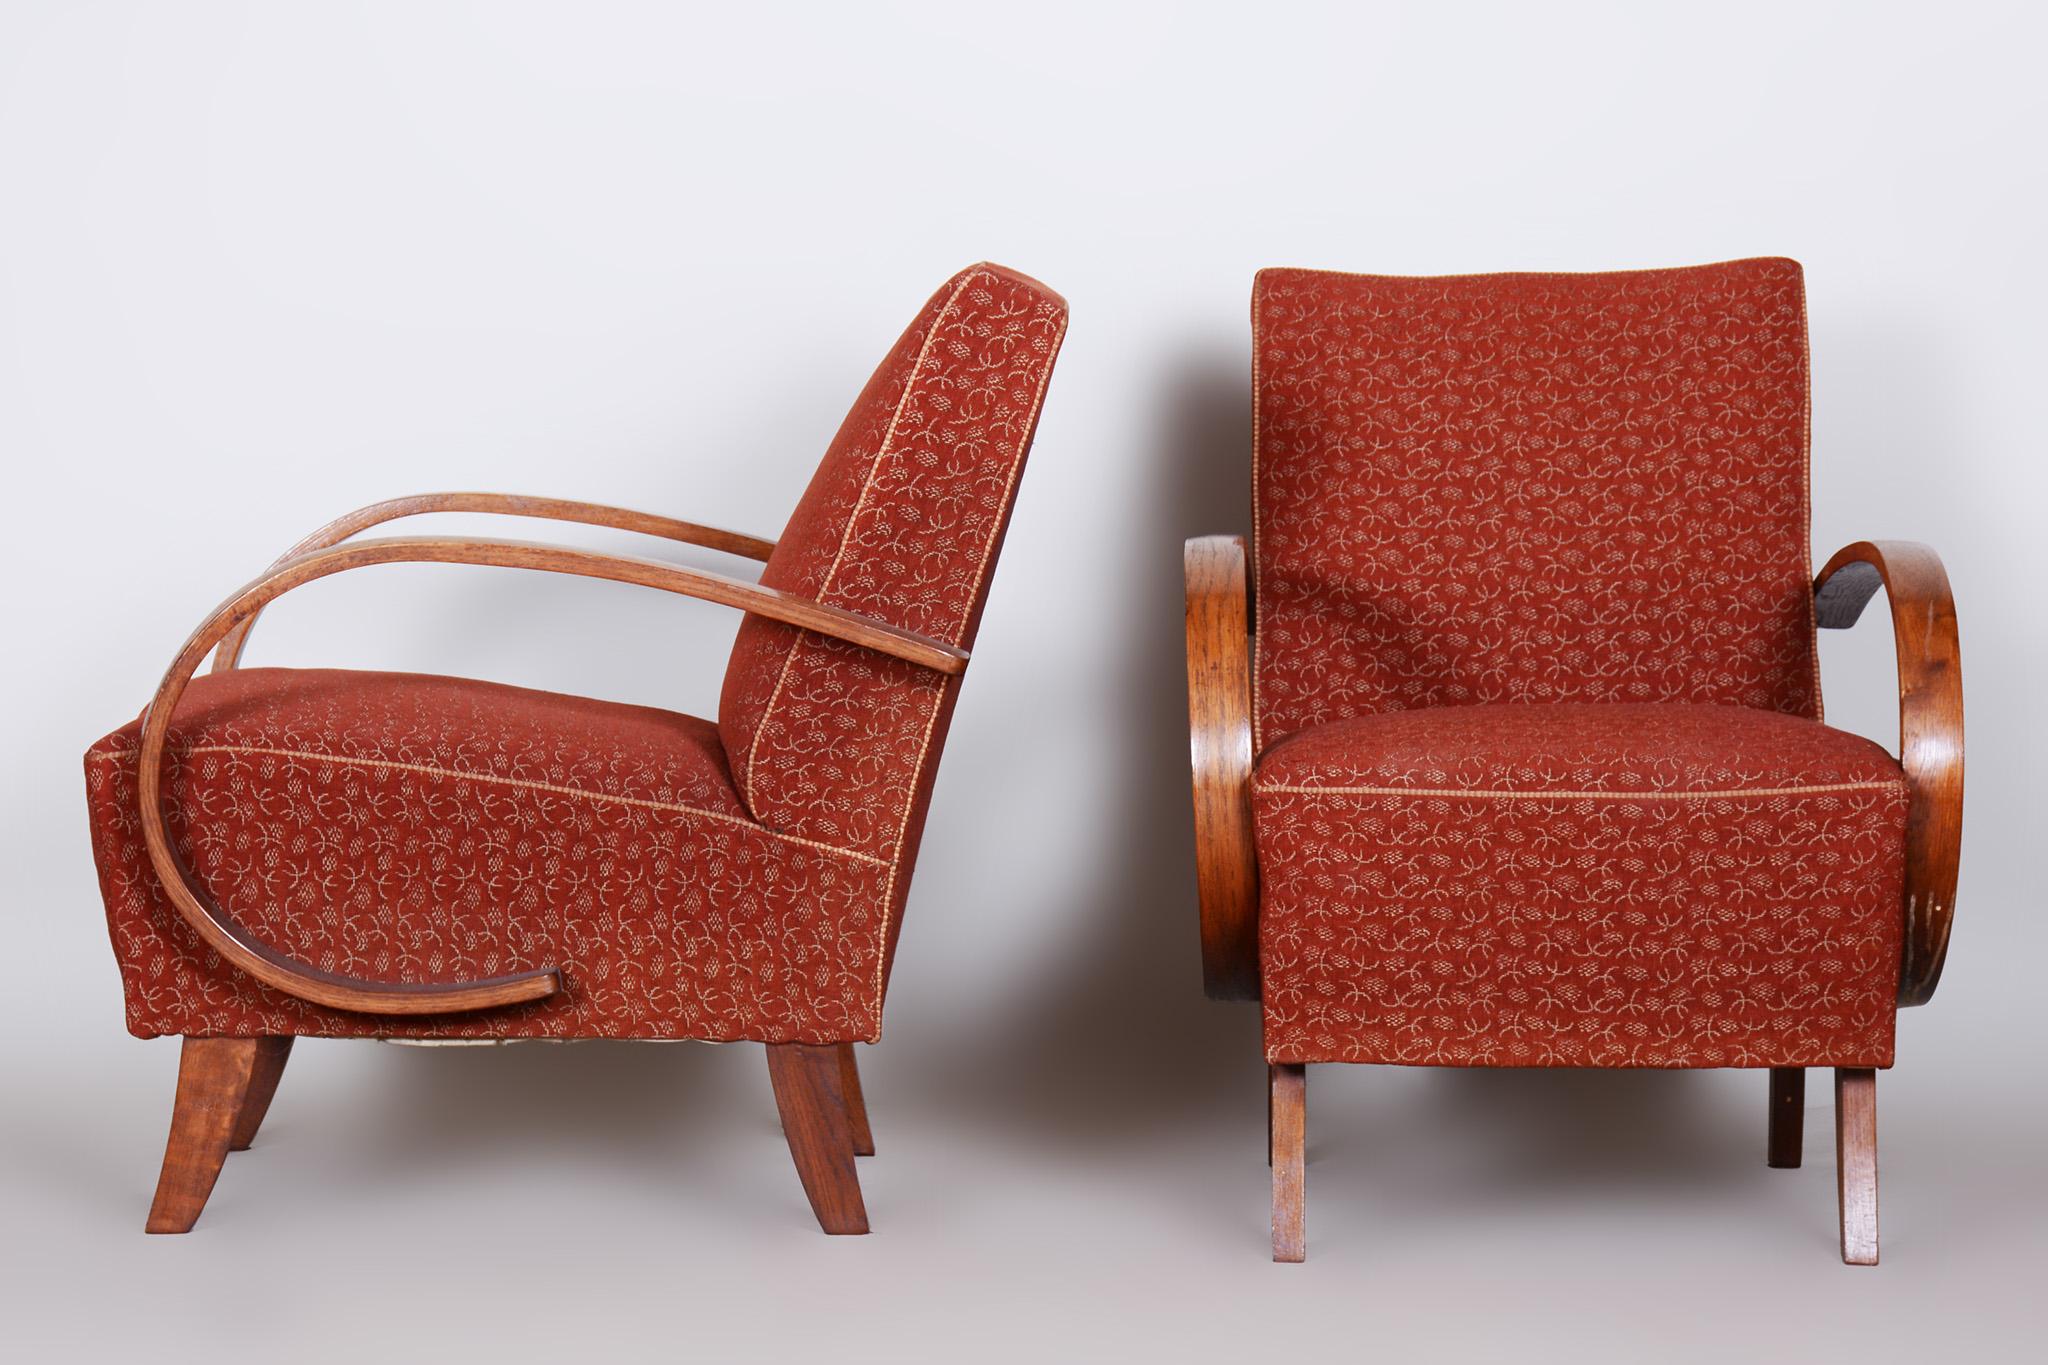 Paire de fauteuils en hêtre ArtDeco tchèque rouge

Source : Tchécoslovaquie 
Période : 1930-1939
Architecte : Jindrich Halabala 
Fabricant : Up&Up Zavody 
MATERIAL : Hêtre, Tissu

Sellerie d'origine conservée. Le tissu a été nettoyé par un